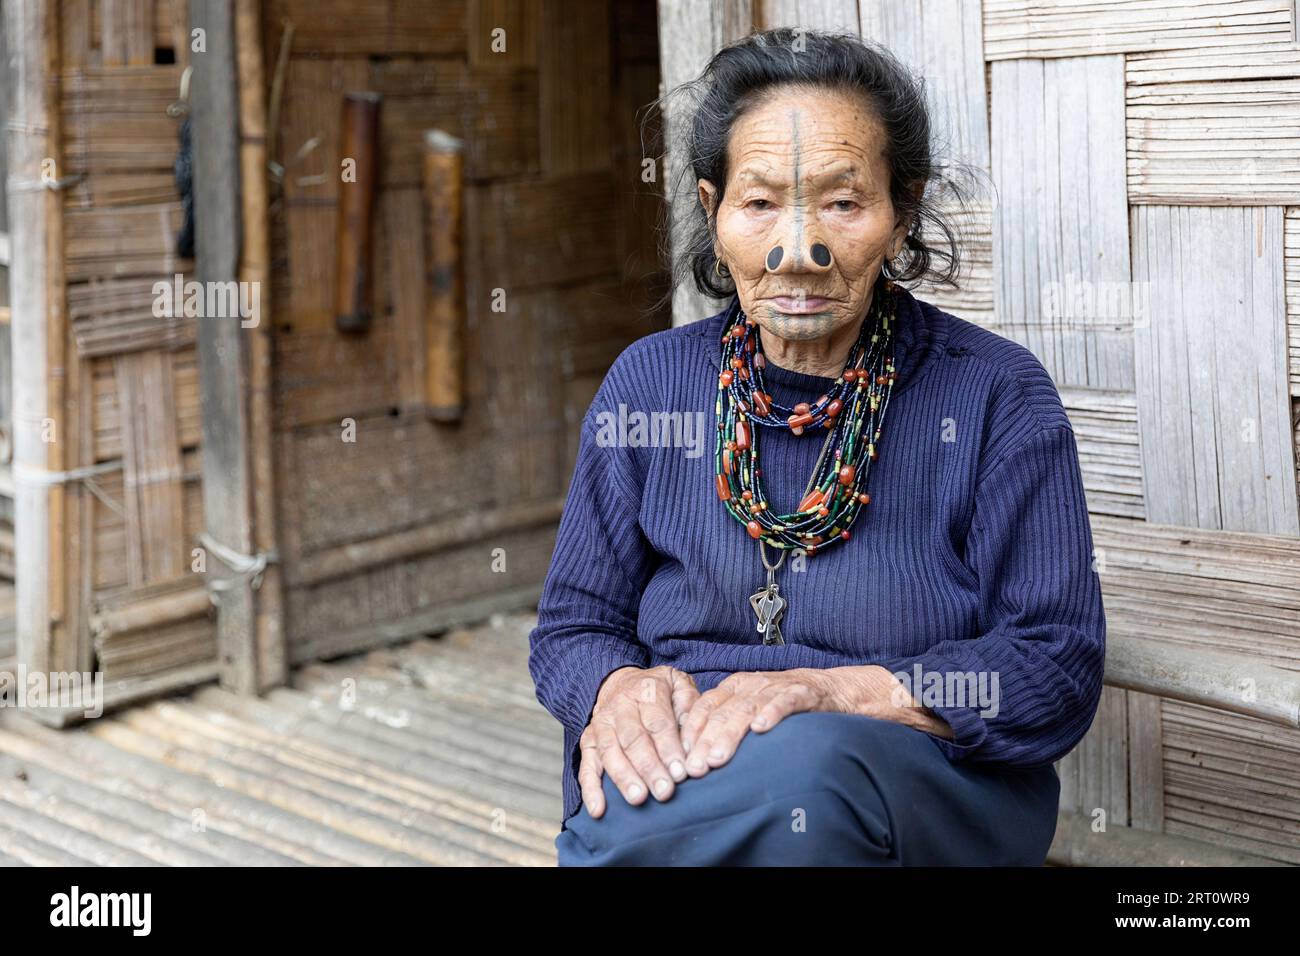 Portrait de femme indigène âgée de minorité ethnique Apatani tribale avec des bouchons de nez en bois noir et des tatouages de visage traditionnels, Arunachal Pradesh, Inde Banque D'Images